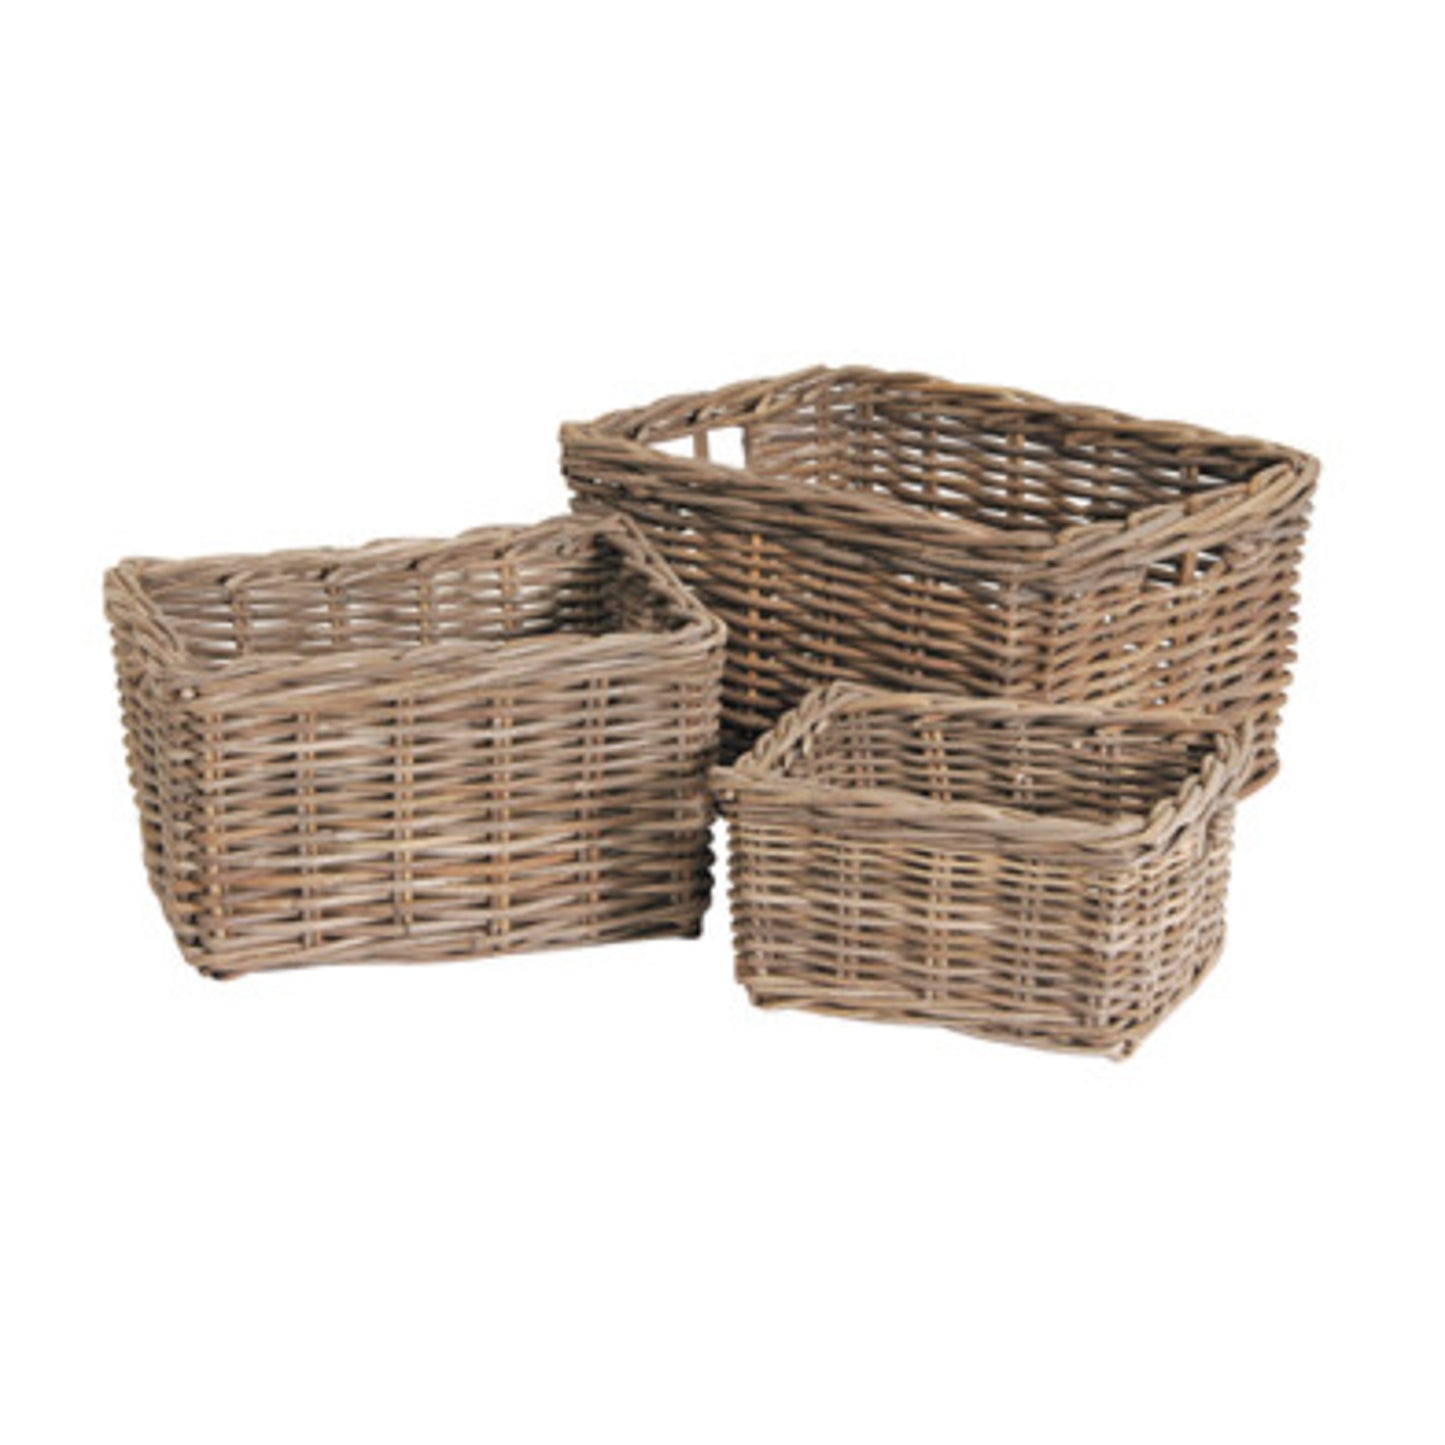 3 Kubu Storage Baskets